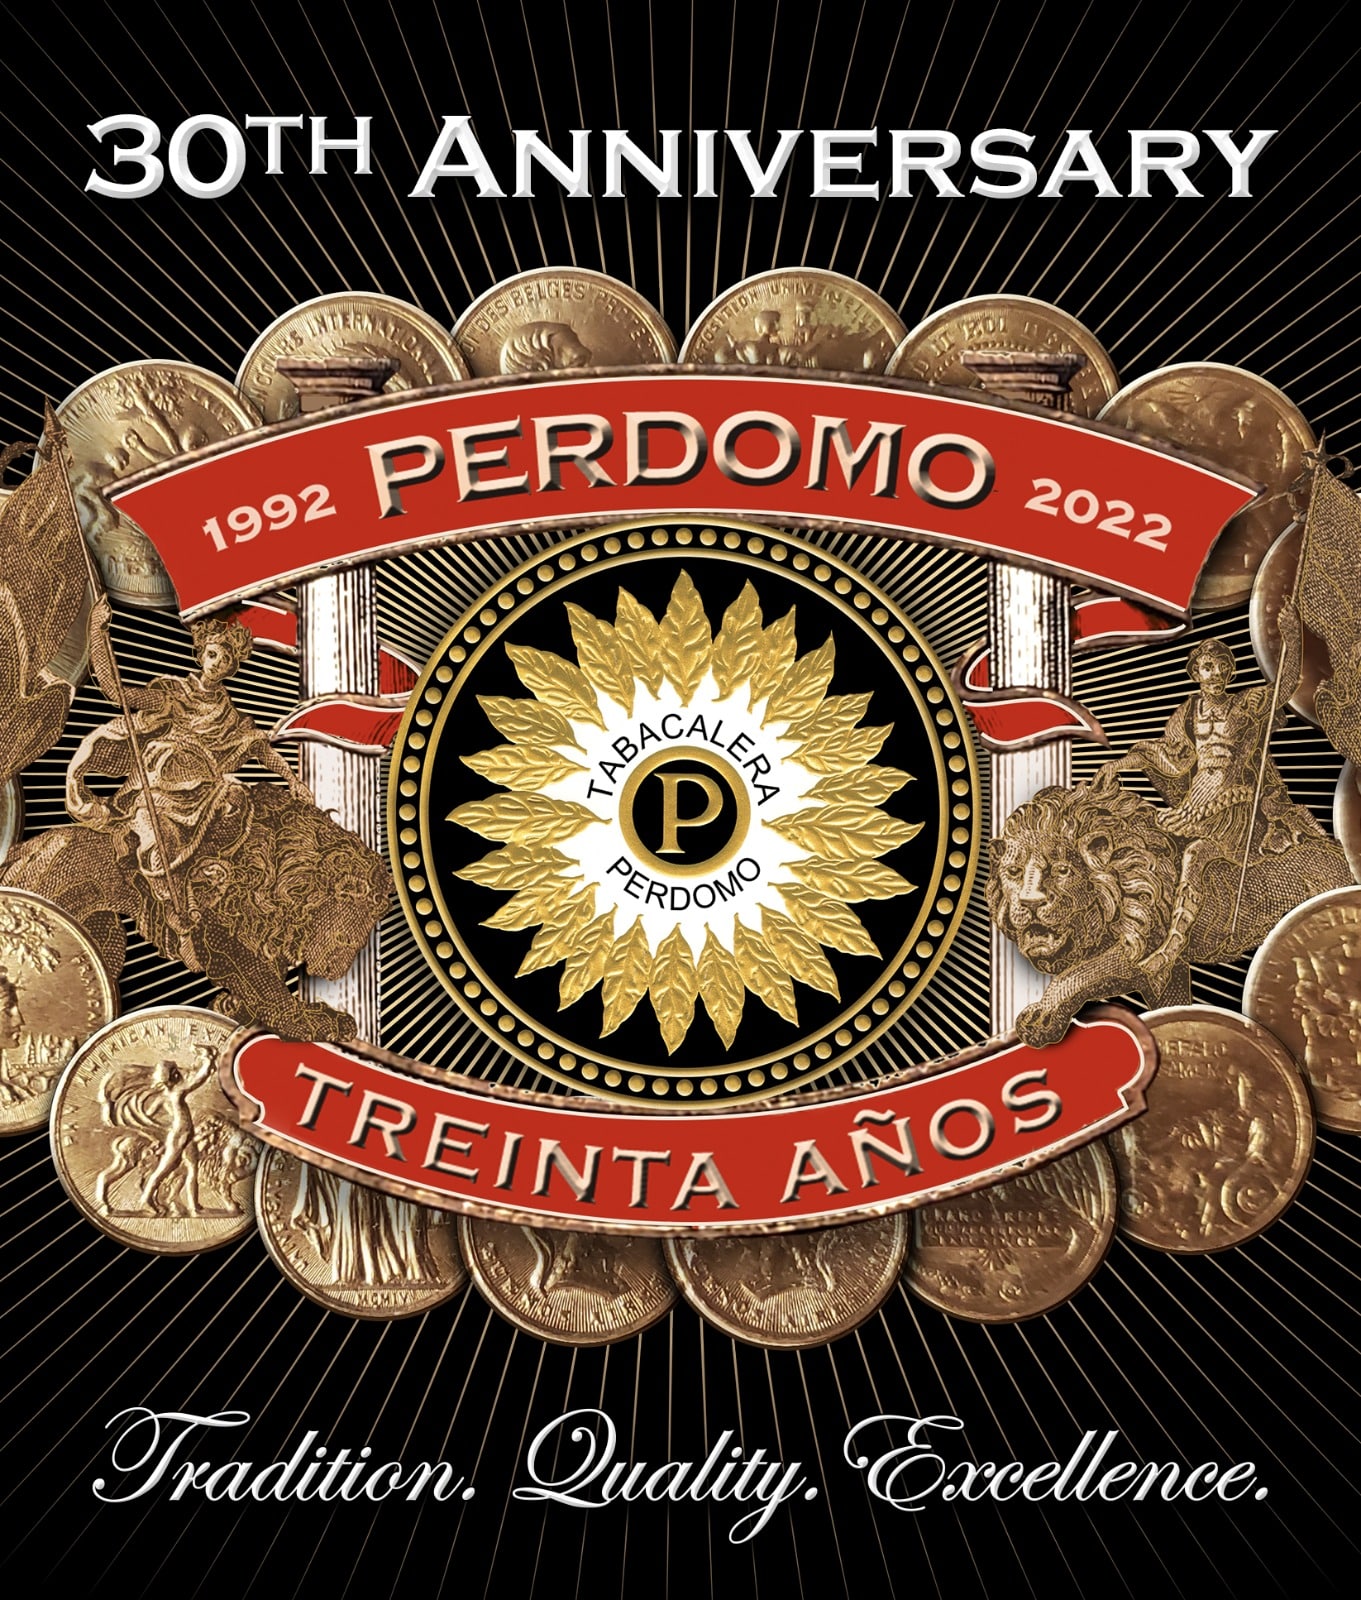 Perdomo 30th Anniversary announcement graphic